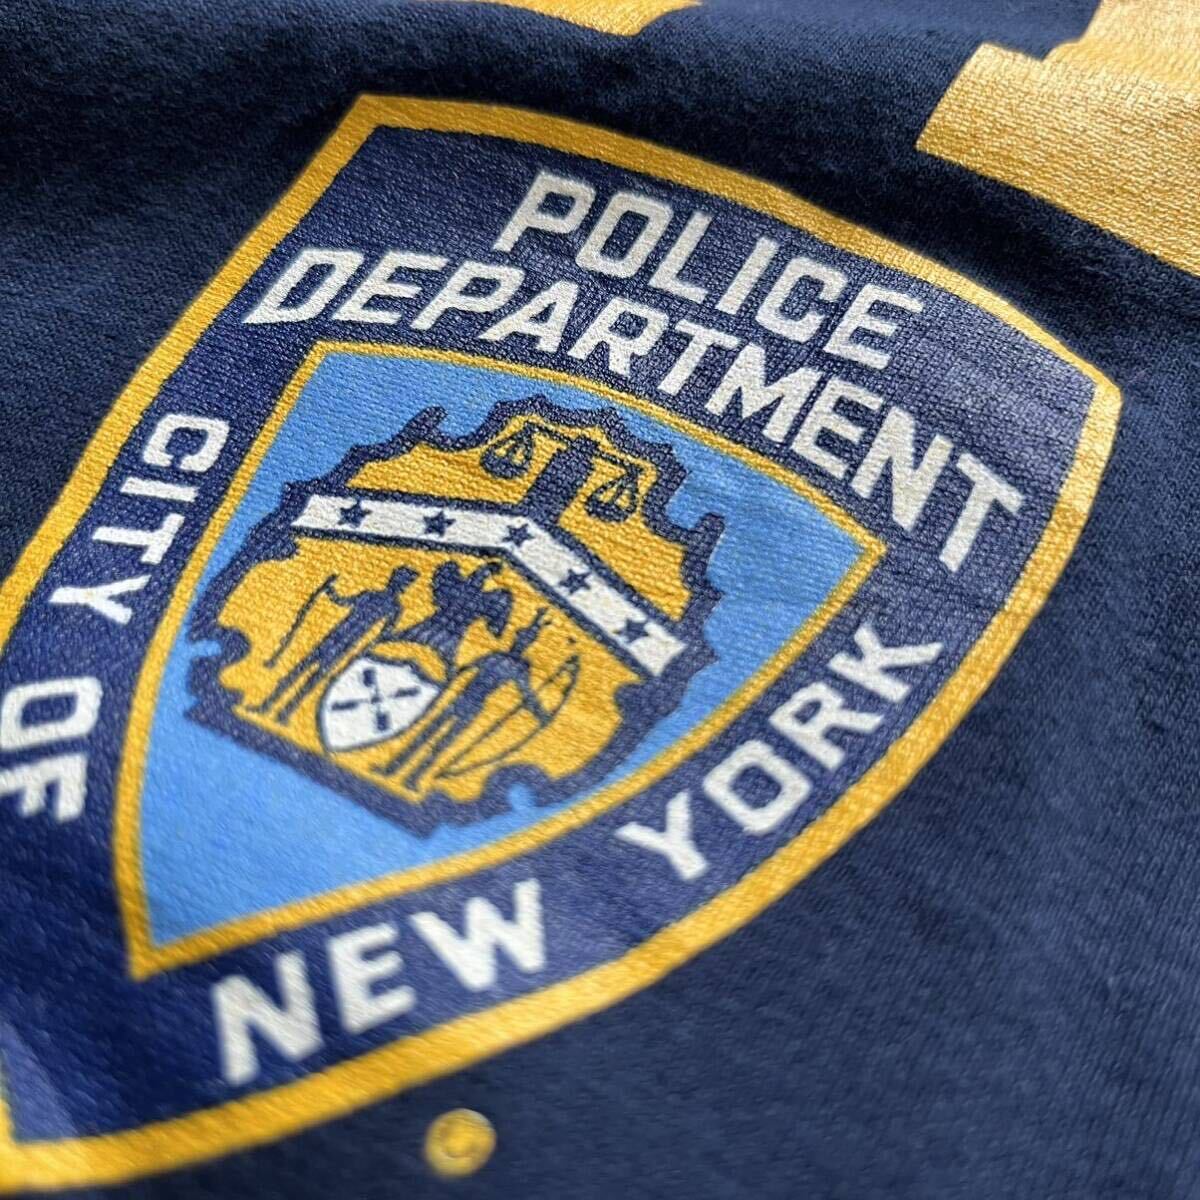 NYPD メンズ 半袖Tシャツ フロント イエロー プリント 古着 アメカジ Mサイズ 綿 コットン 送料込 US古着の画像3